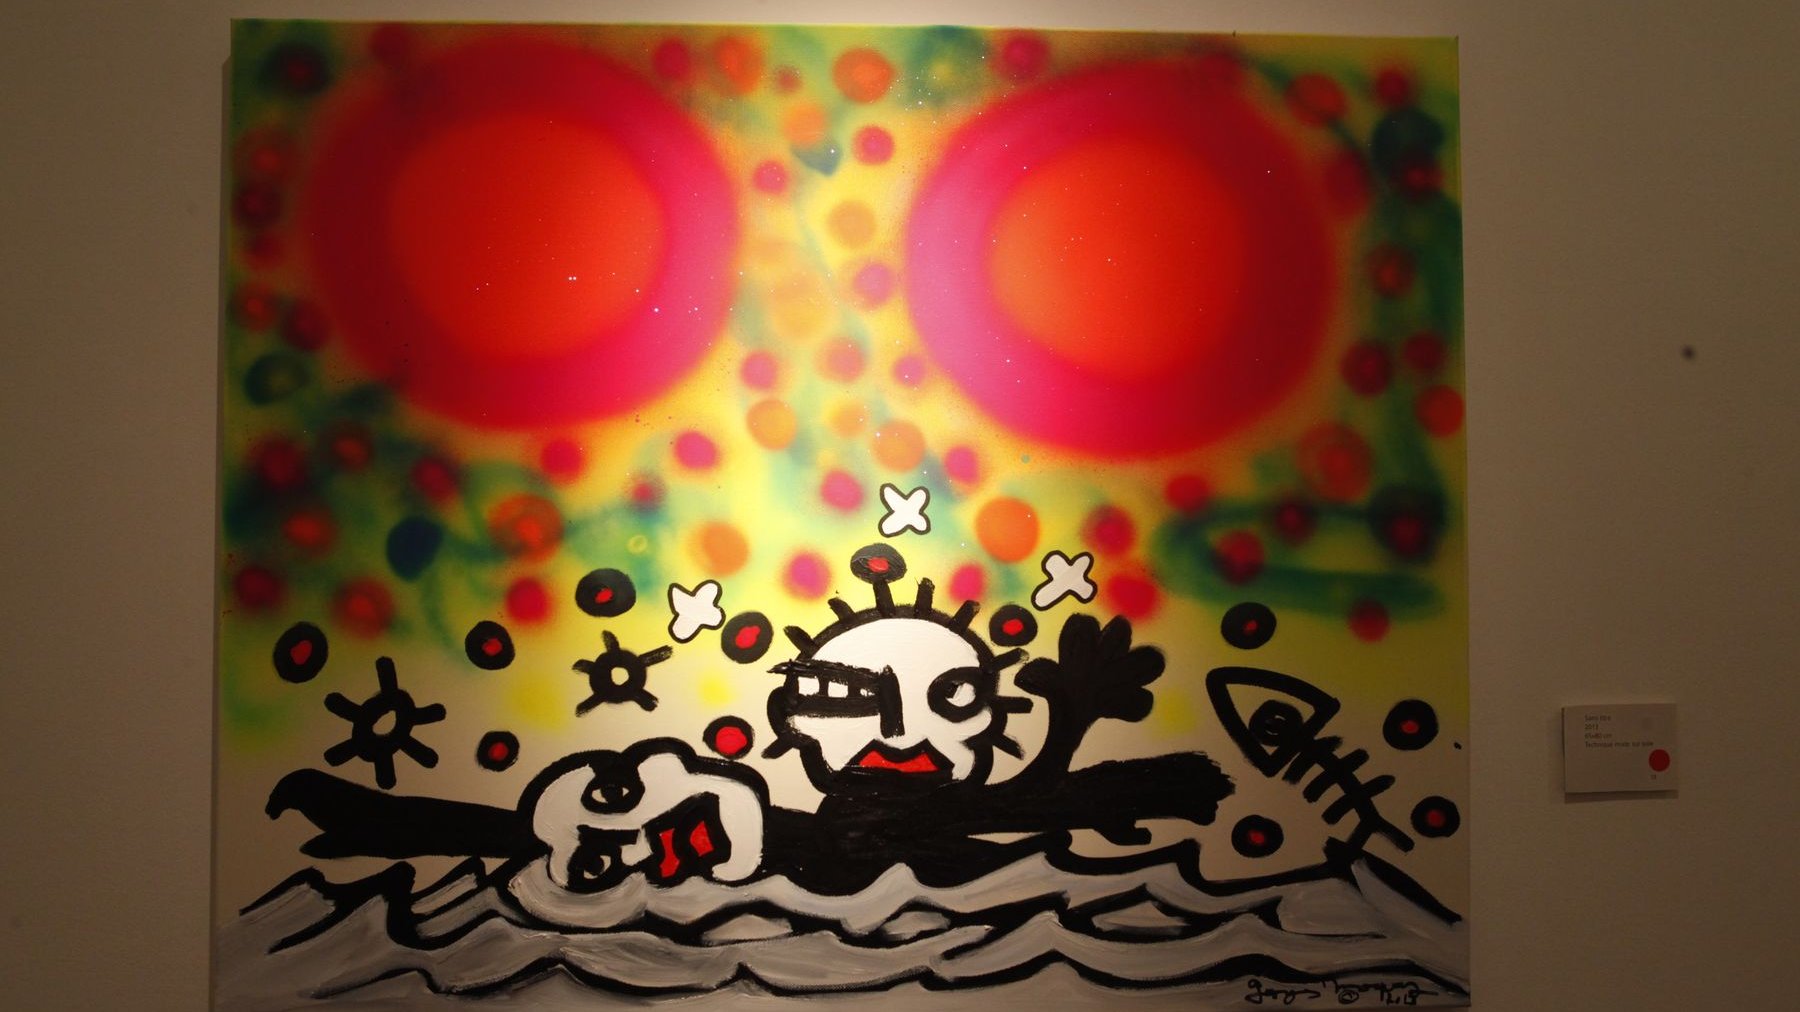 Quelque chose de dadaïste dans "l'écriture" de Moquay. Superpositions d'univers dans cette toile où vie et mort se côtoient et se subtituent l'une à l'autre,  où la couleur se lève sur une scène en noir et blanc, frappée de tâches rouges.
